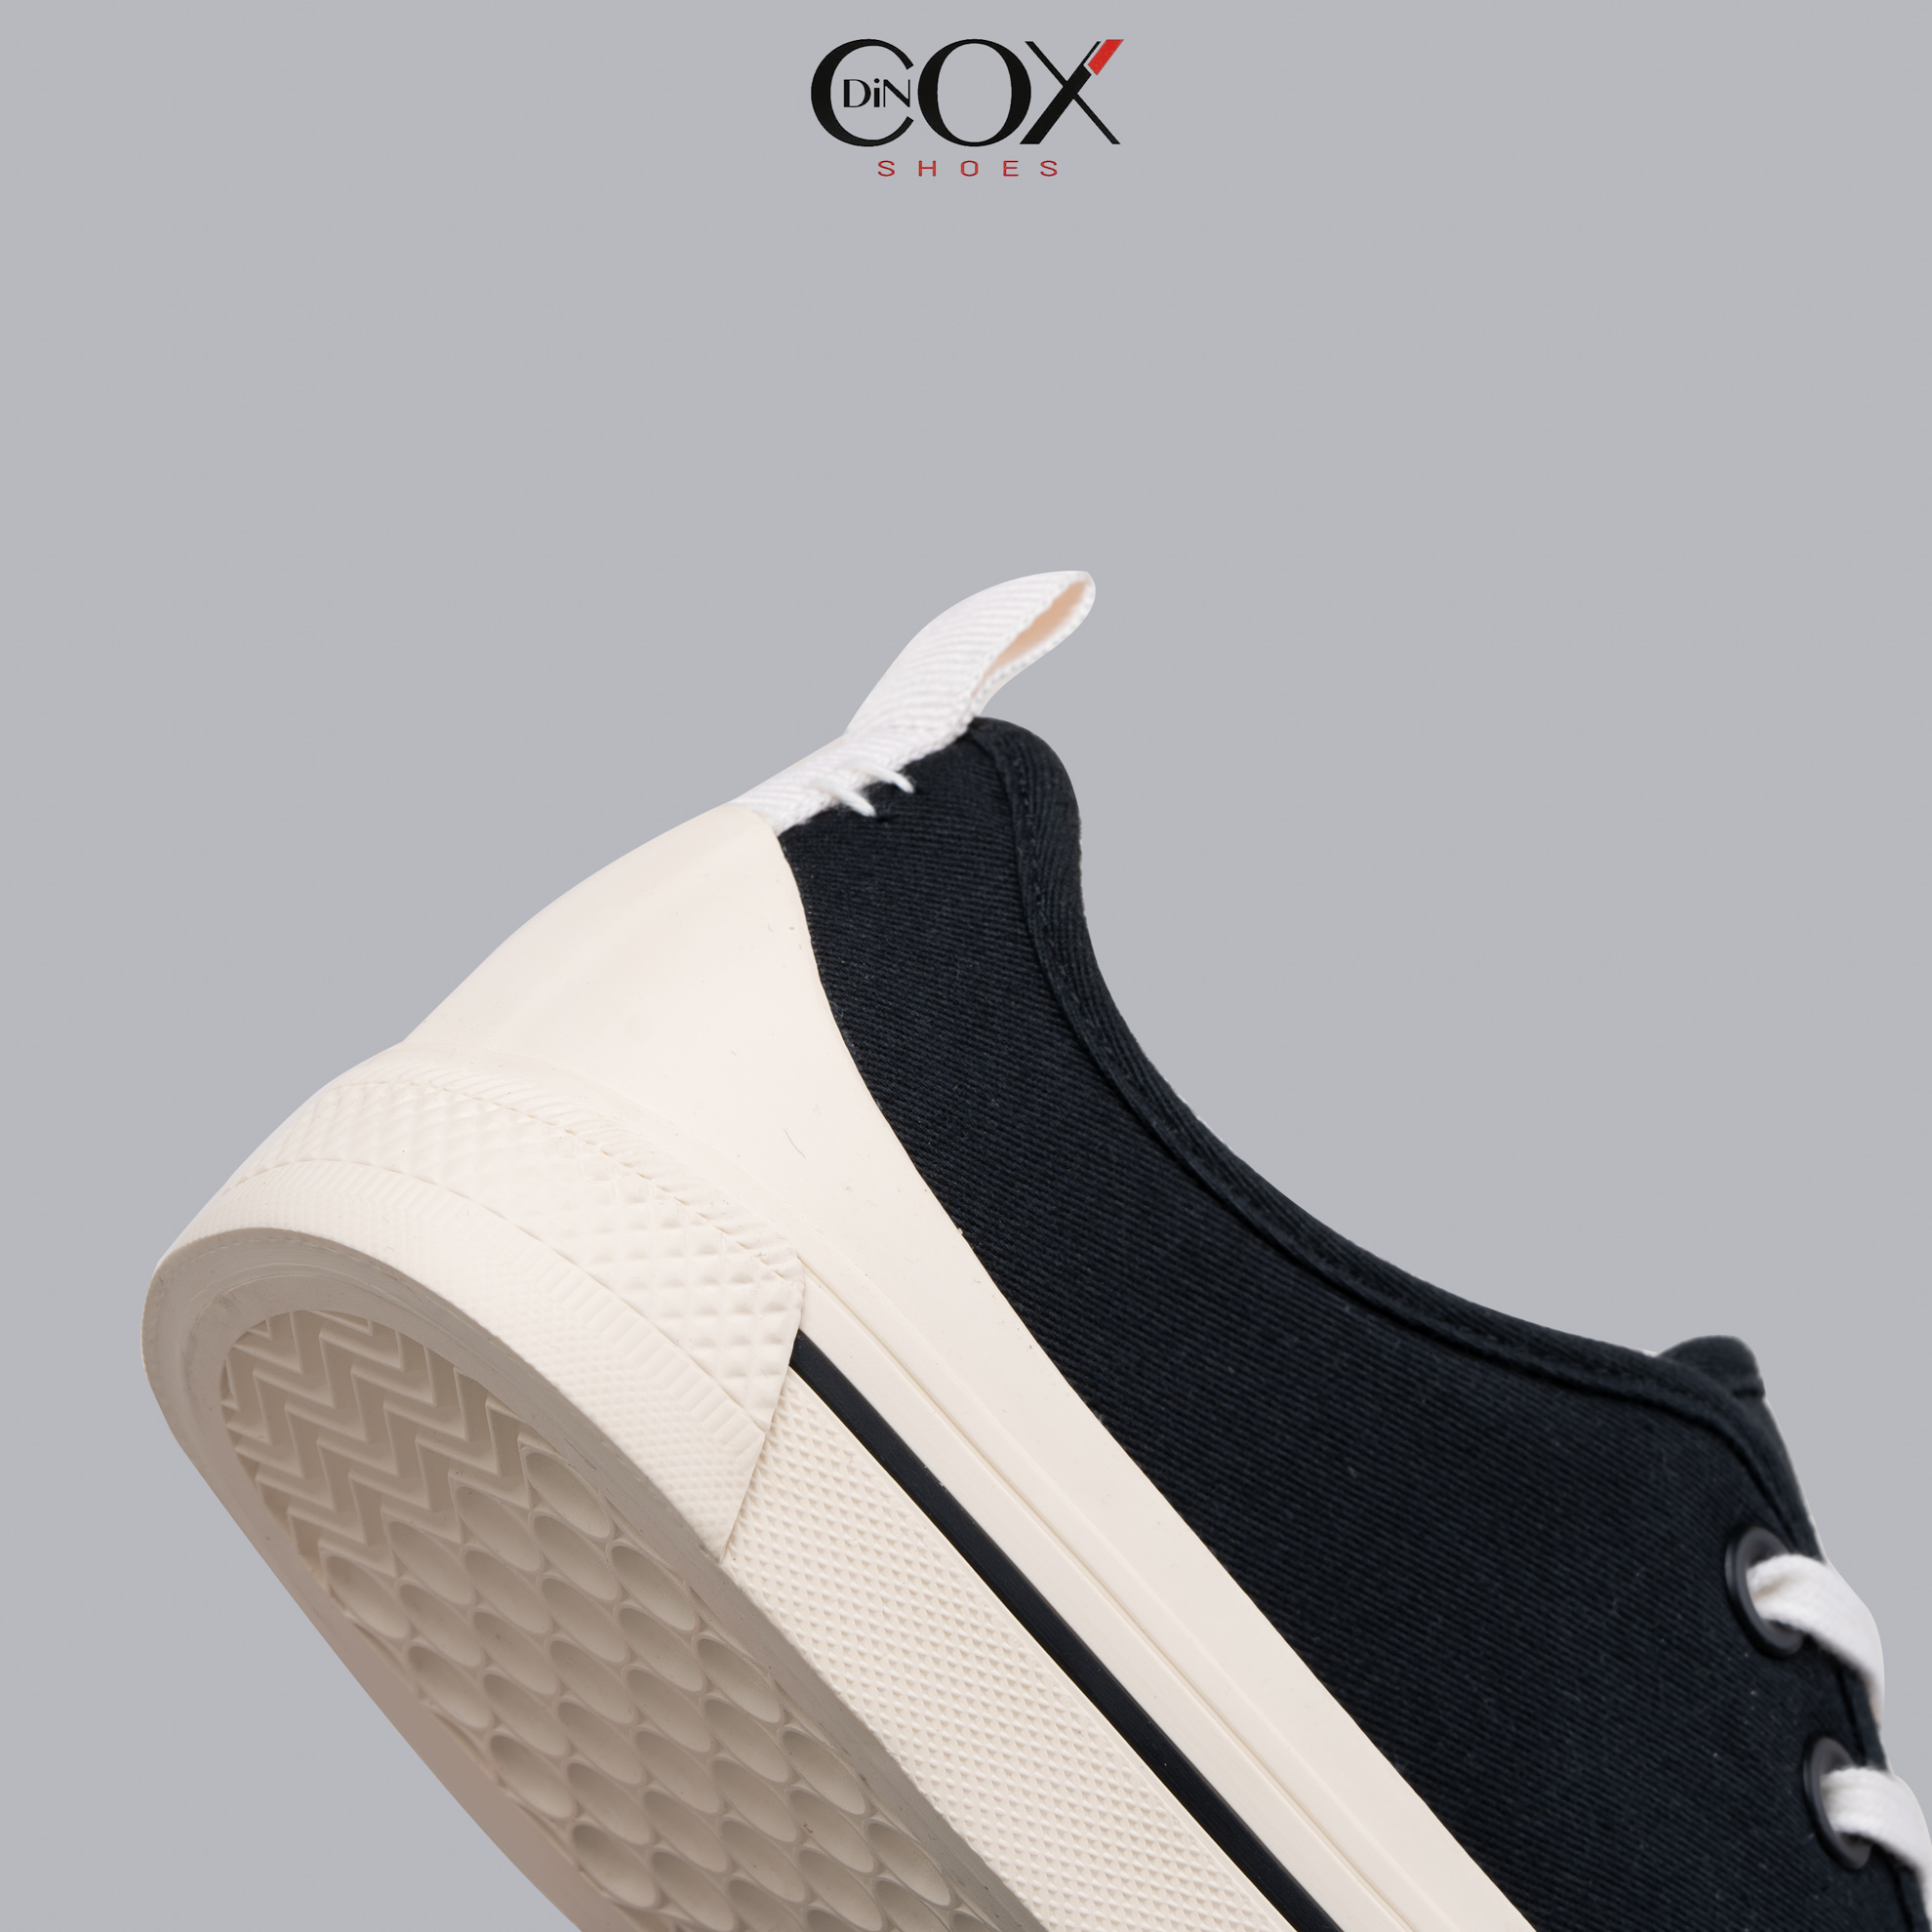 Giày Sneaker Vải Nữ DINCOX C20 Nữ Tính Sang Trọng Black